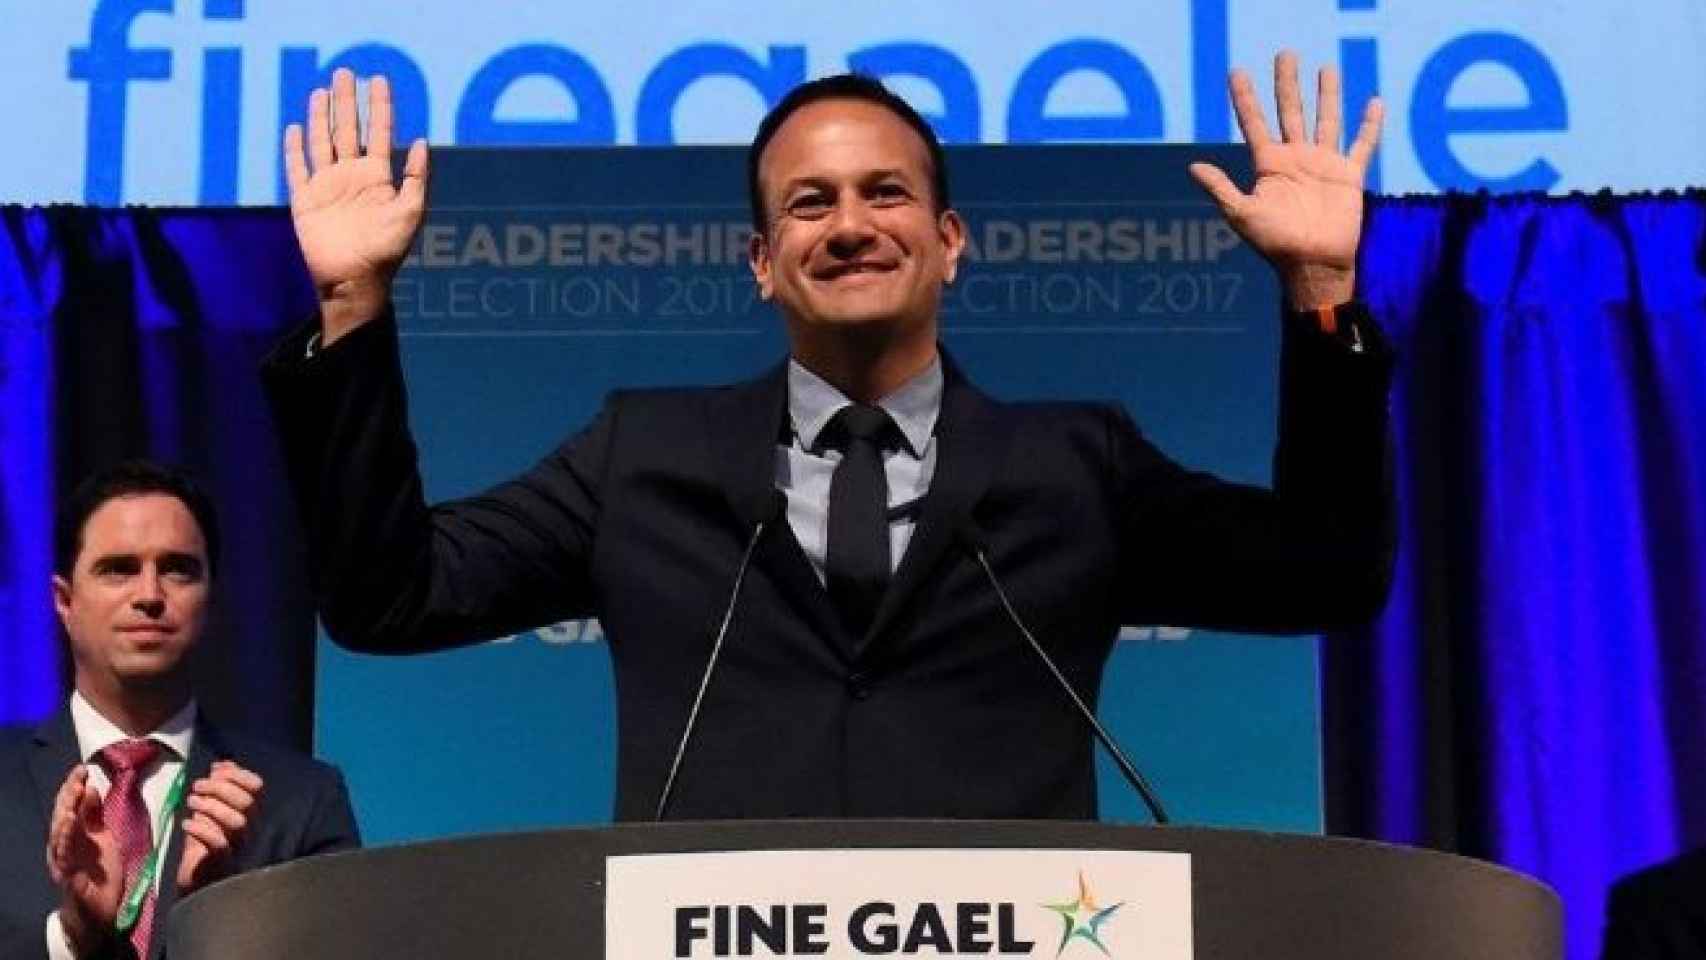 Leo Varadkar, abiertamente gay, será el primer ministro de Irlanda tras ganar las elecciones